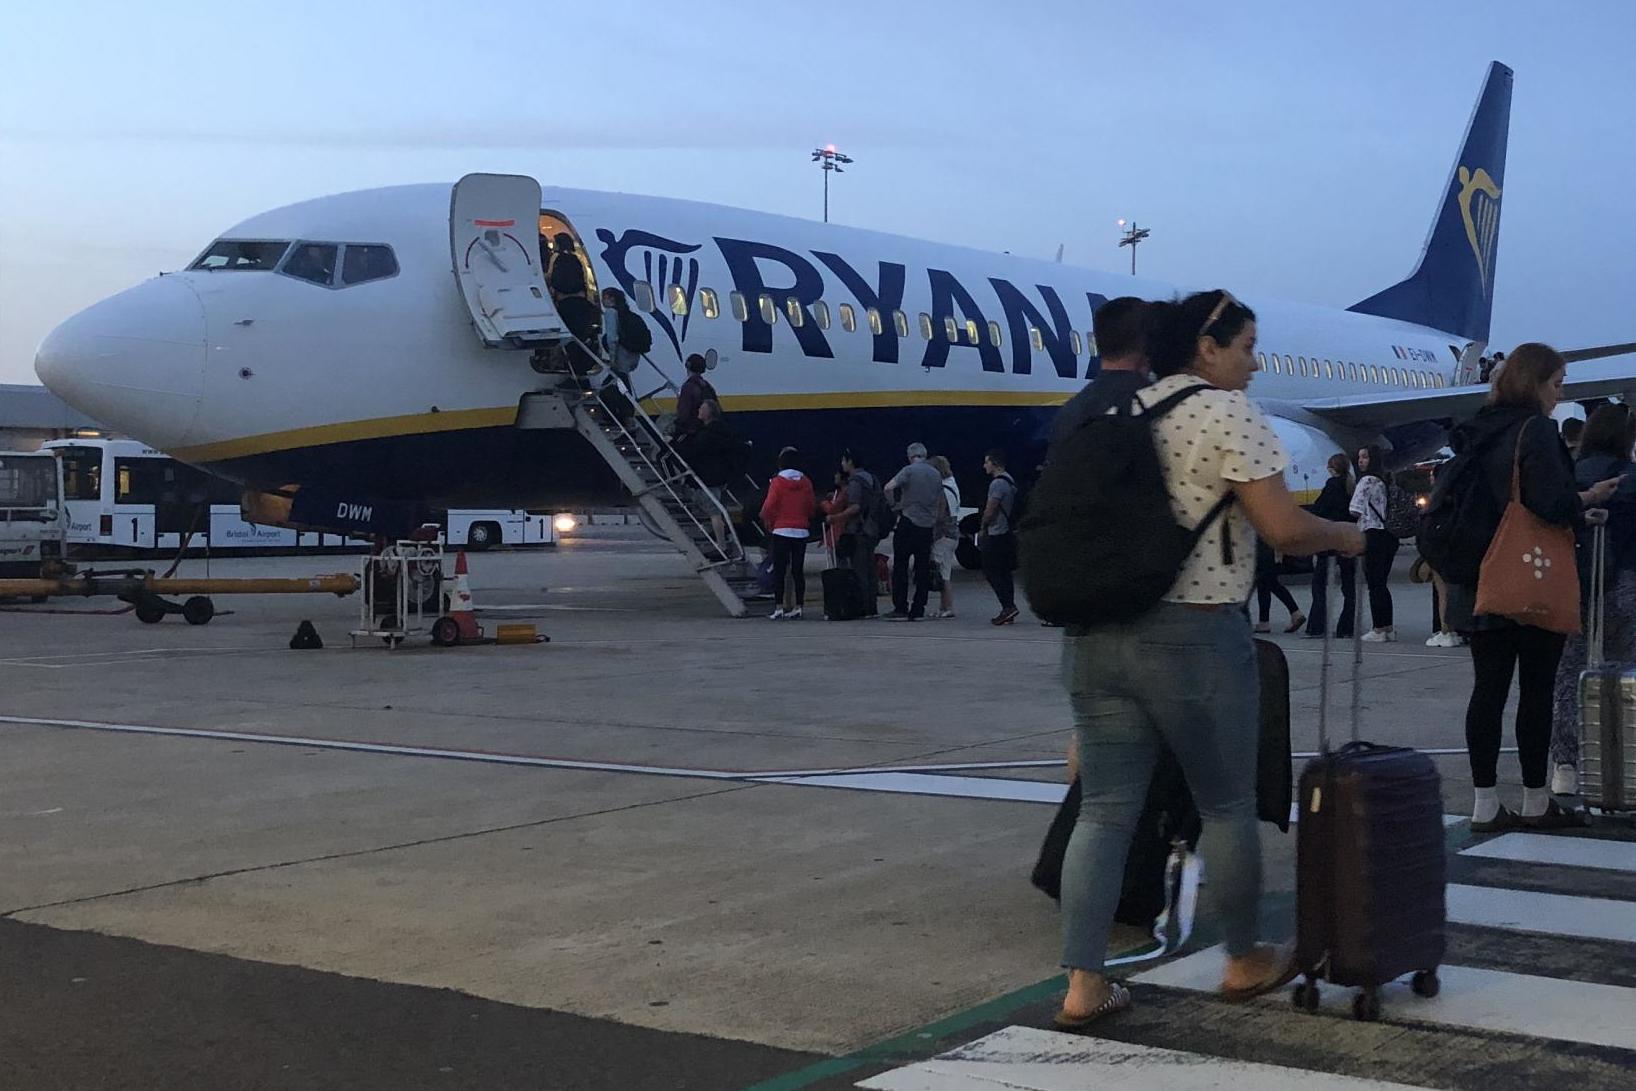 Irish Ryanair pilot strike threat recedes